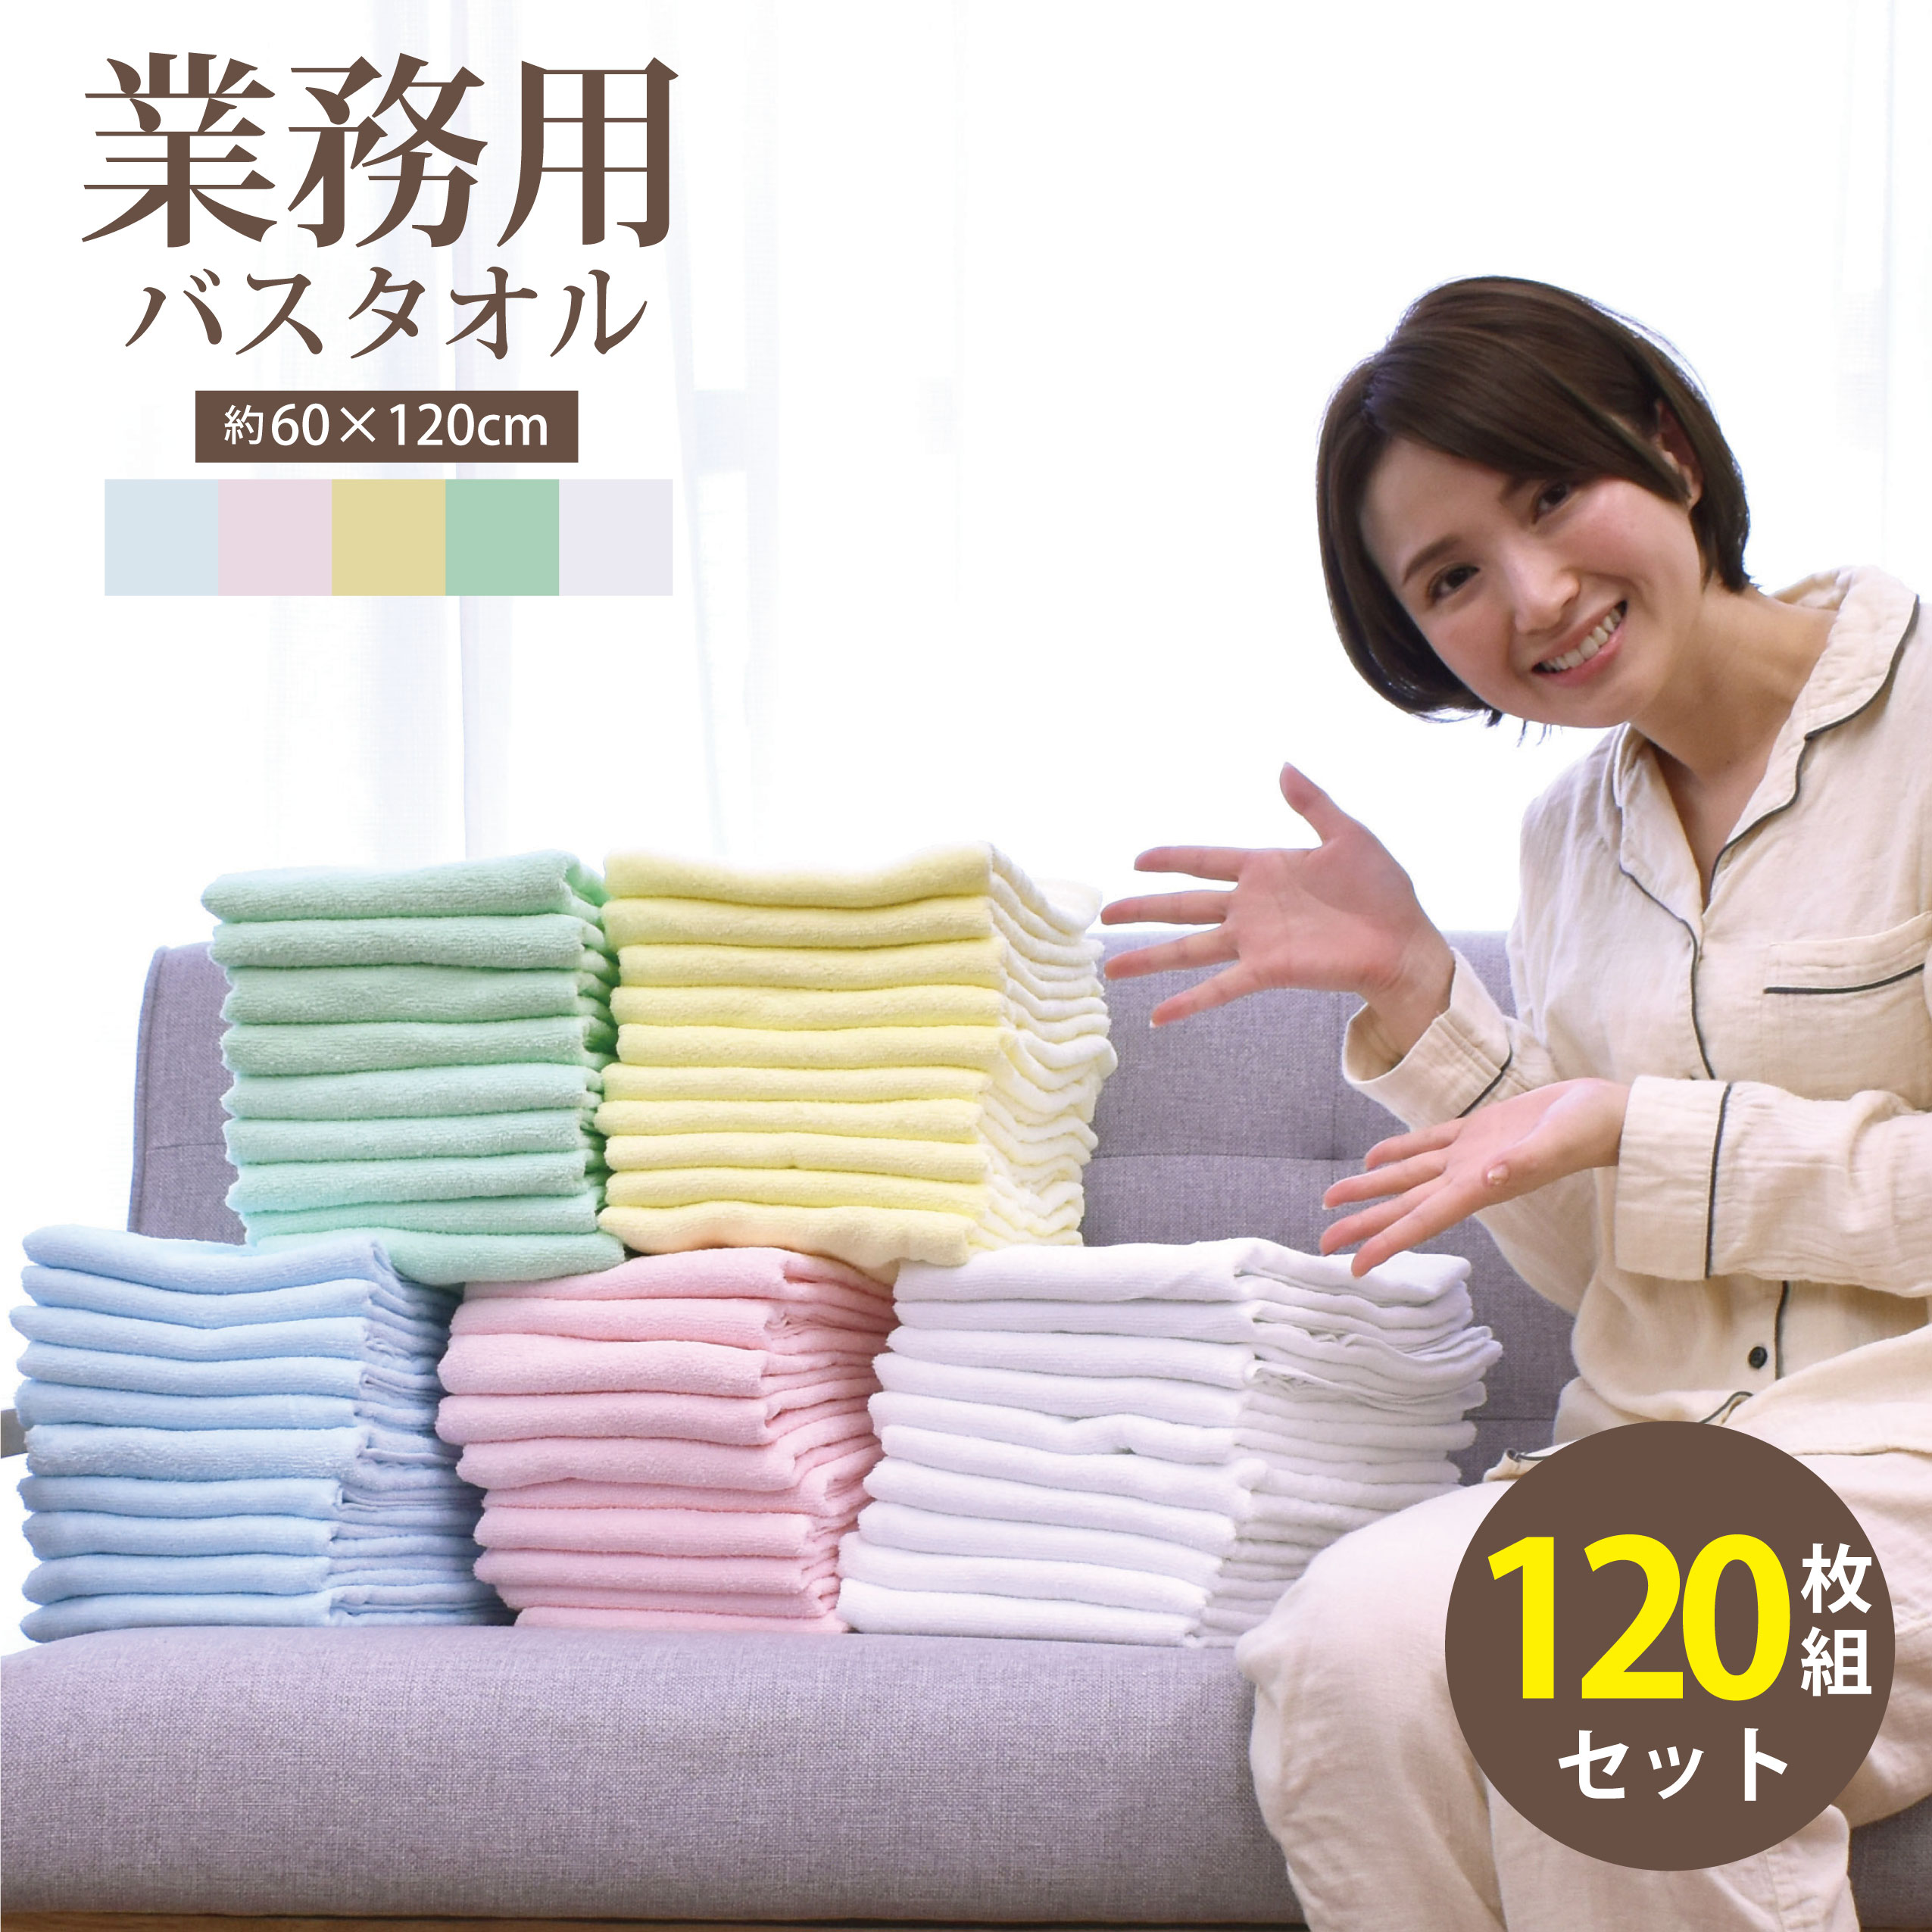 【楽天市場】業務用バスタオル 60枚セット バスタオル 業務用 激安